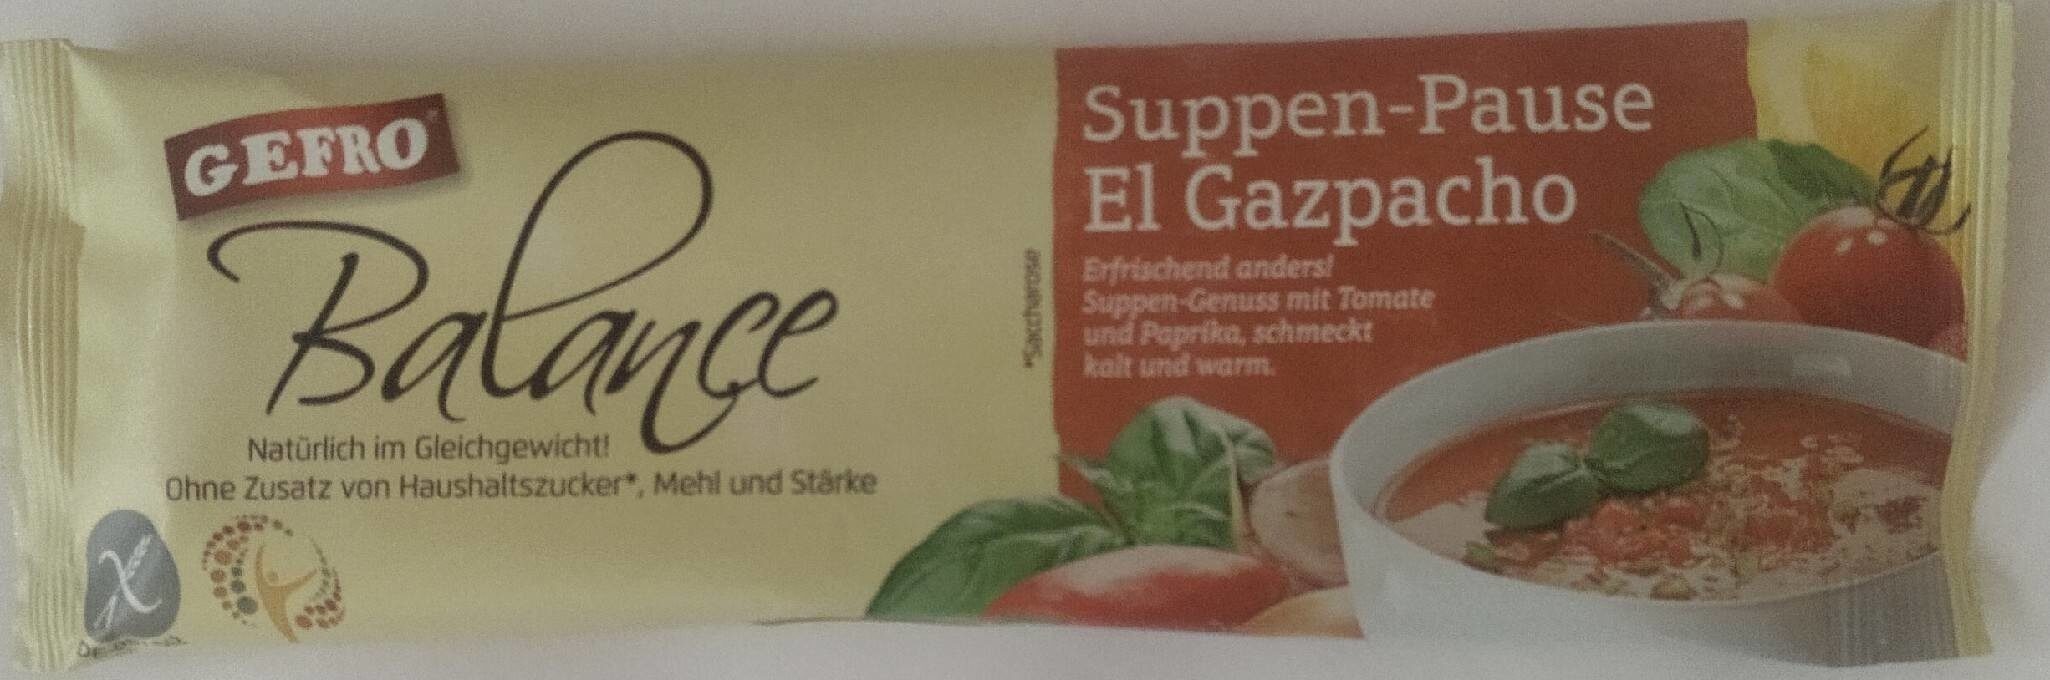 Suppen-Pause El Gazpacho - Produit - de